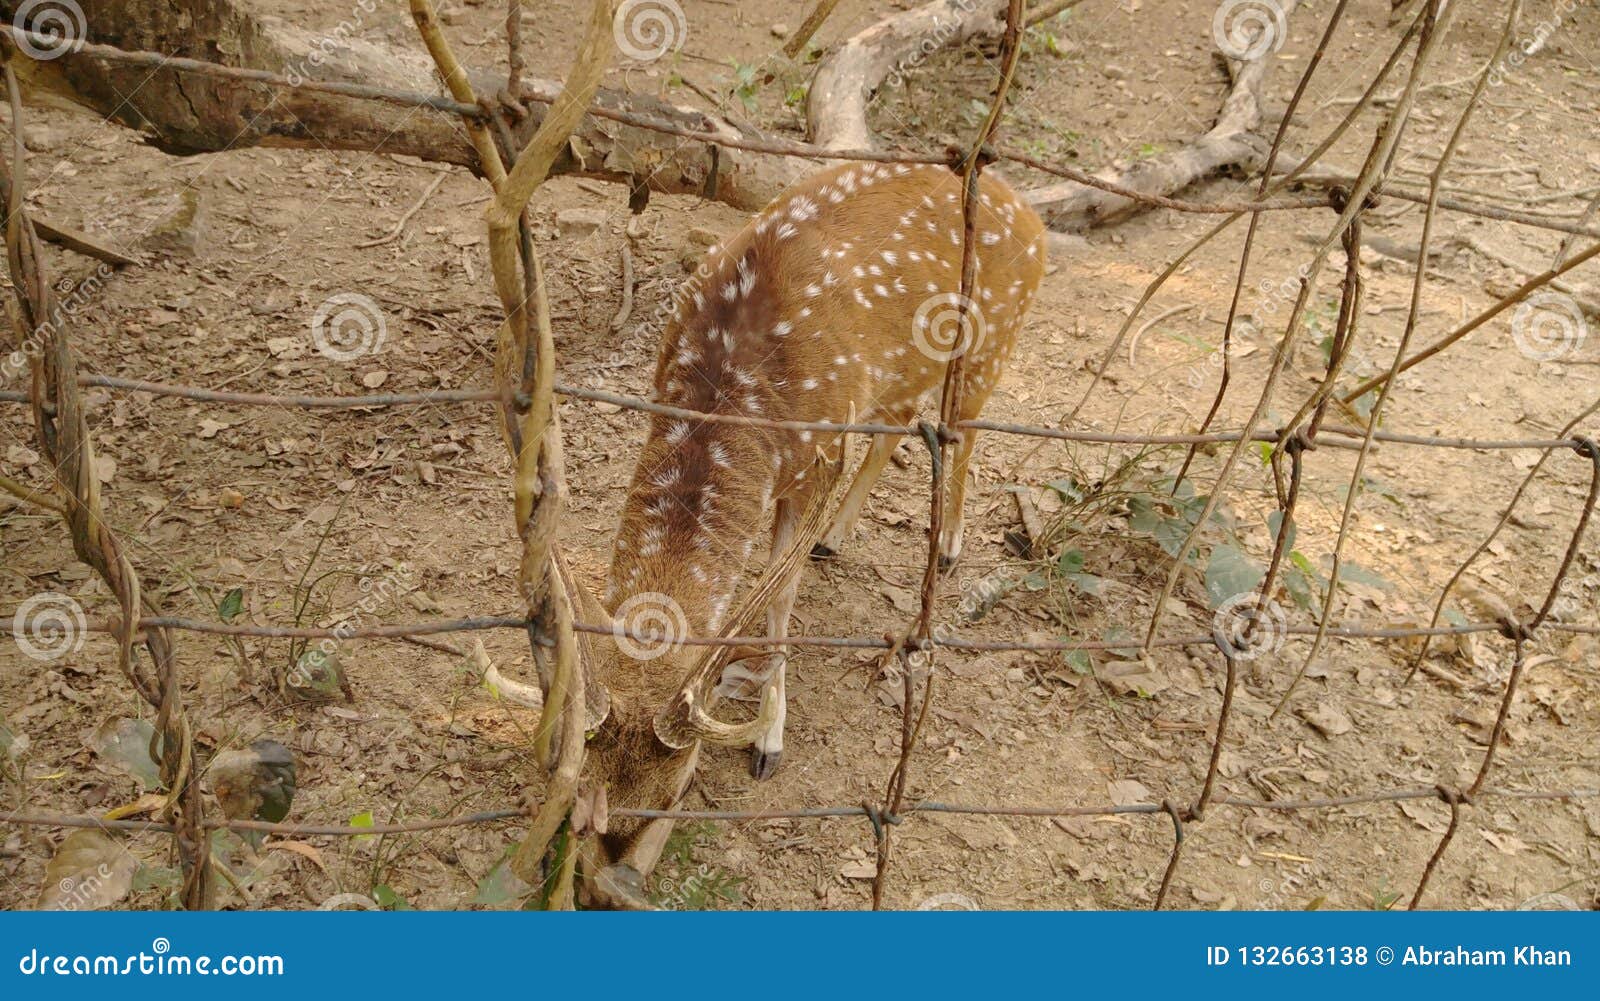 spotted deer